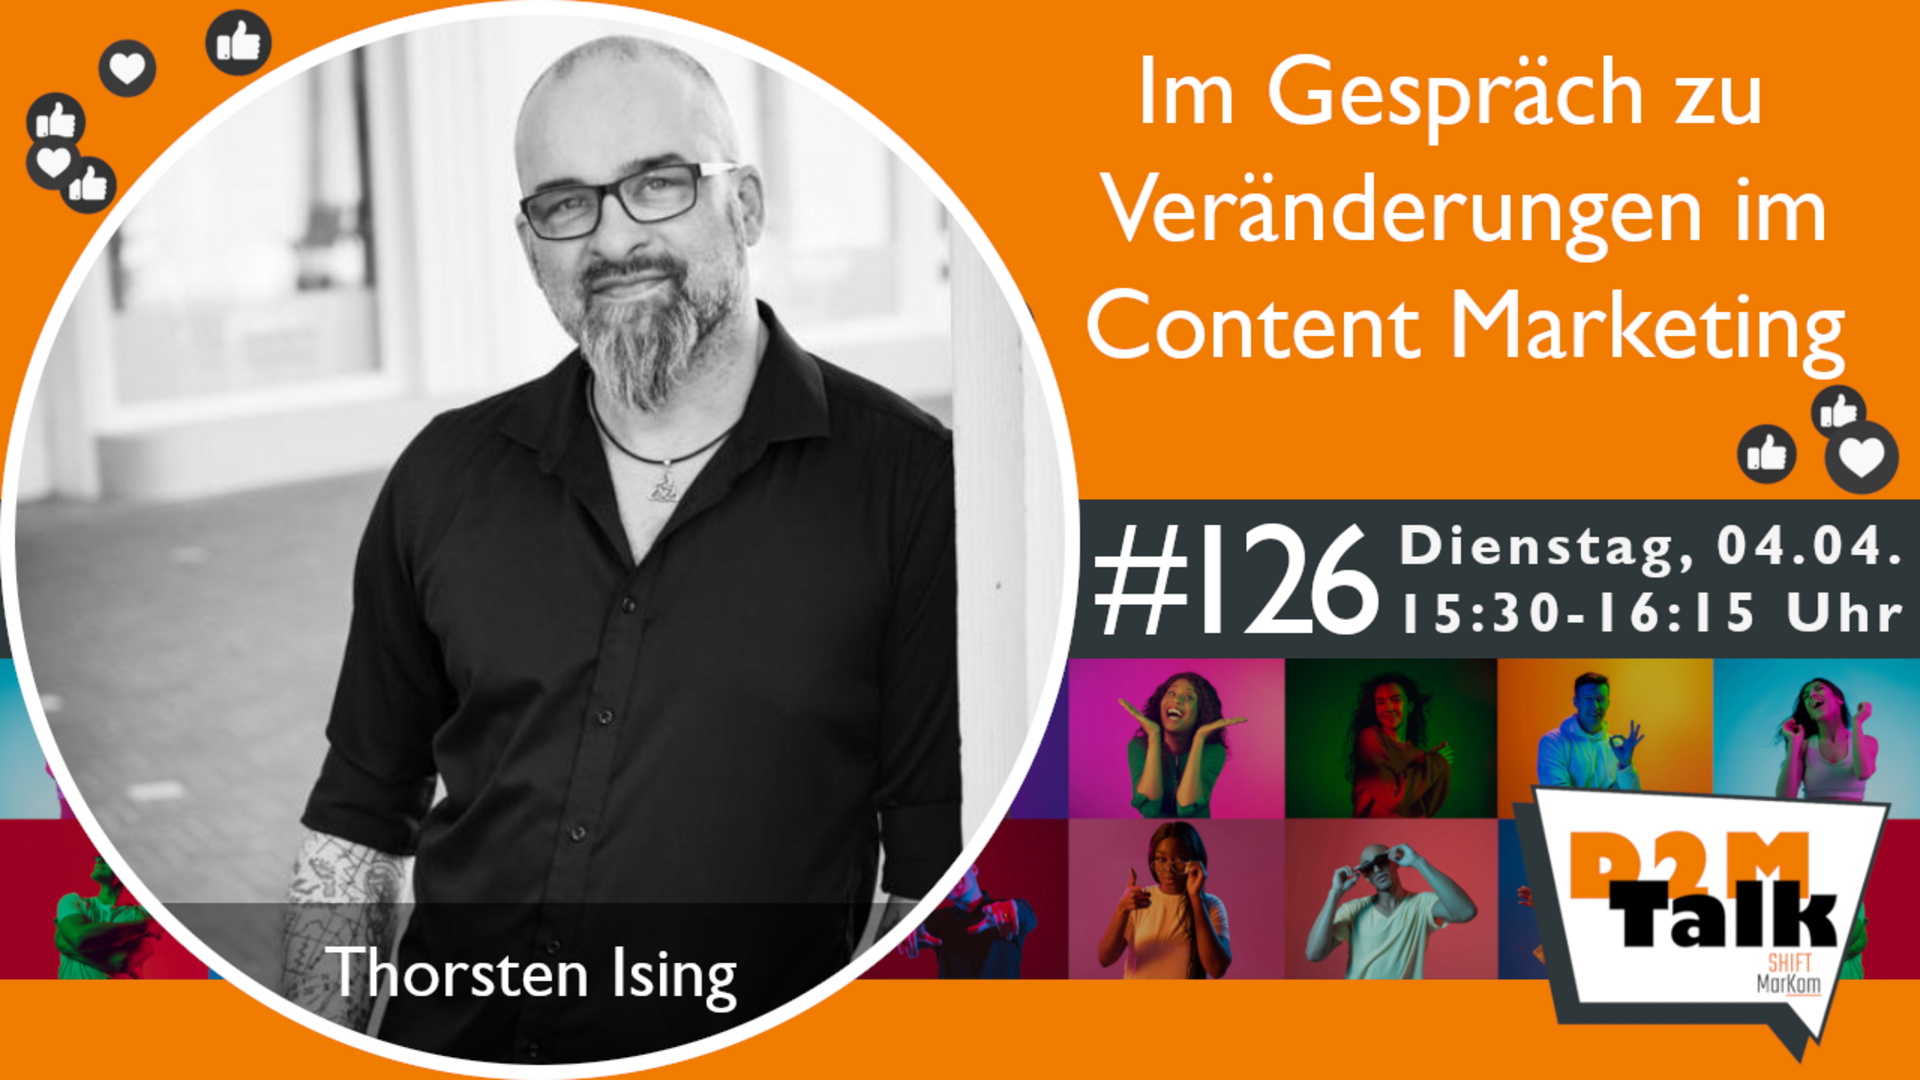 Im Gespräch mit Thorsten Ising über aktuelle Veränderungen & Herausforderungen im Content Marketing